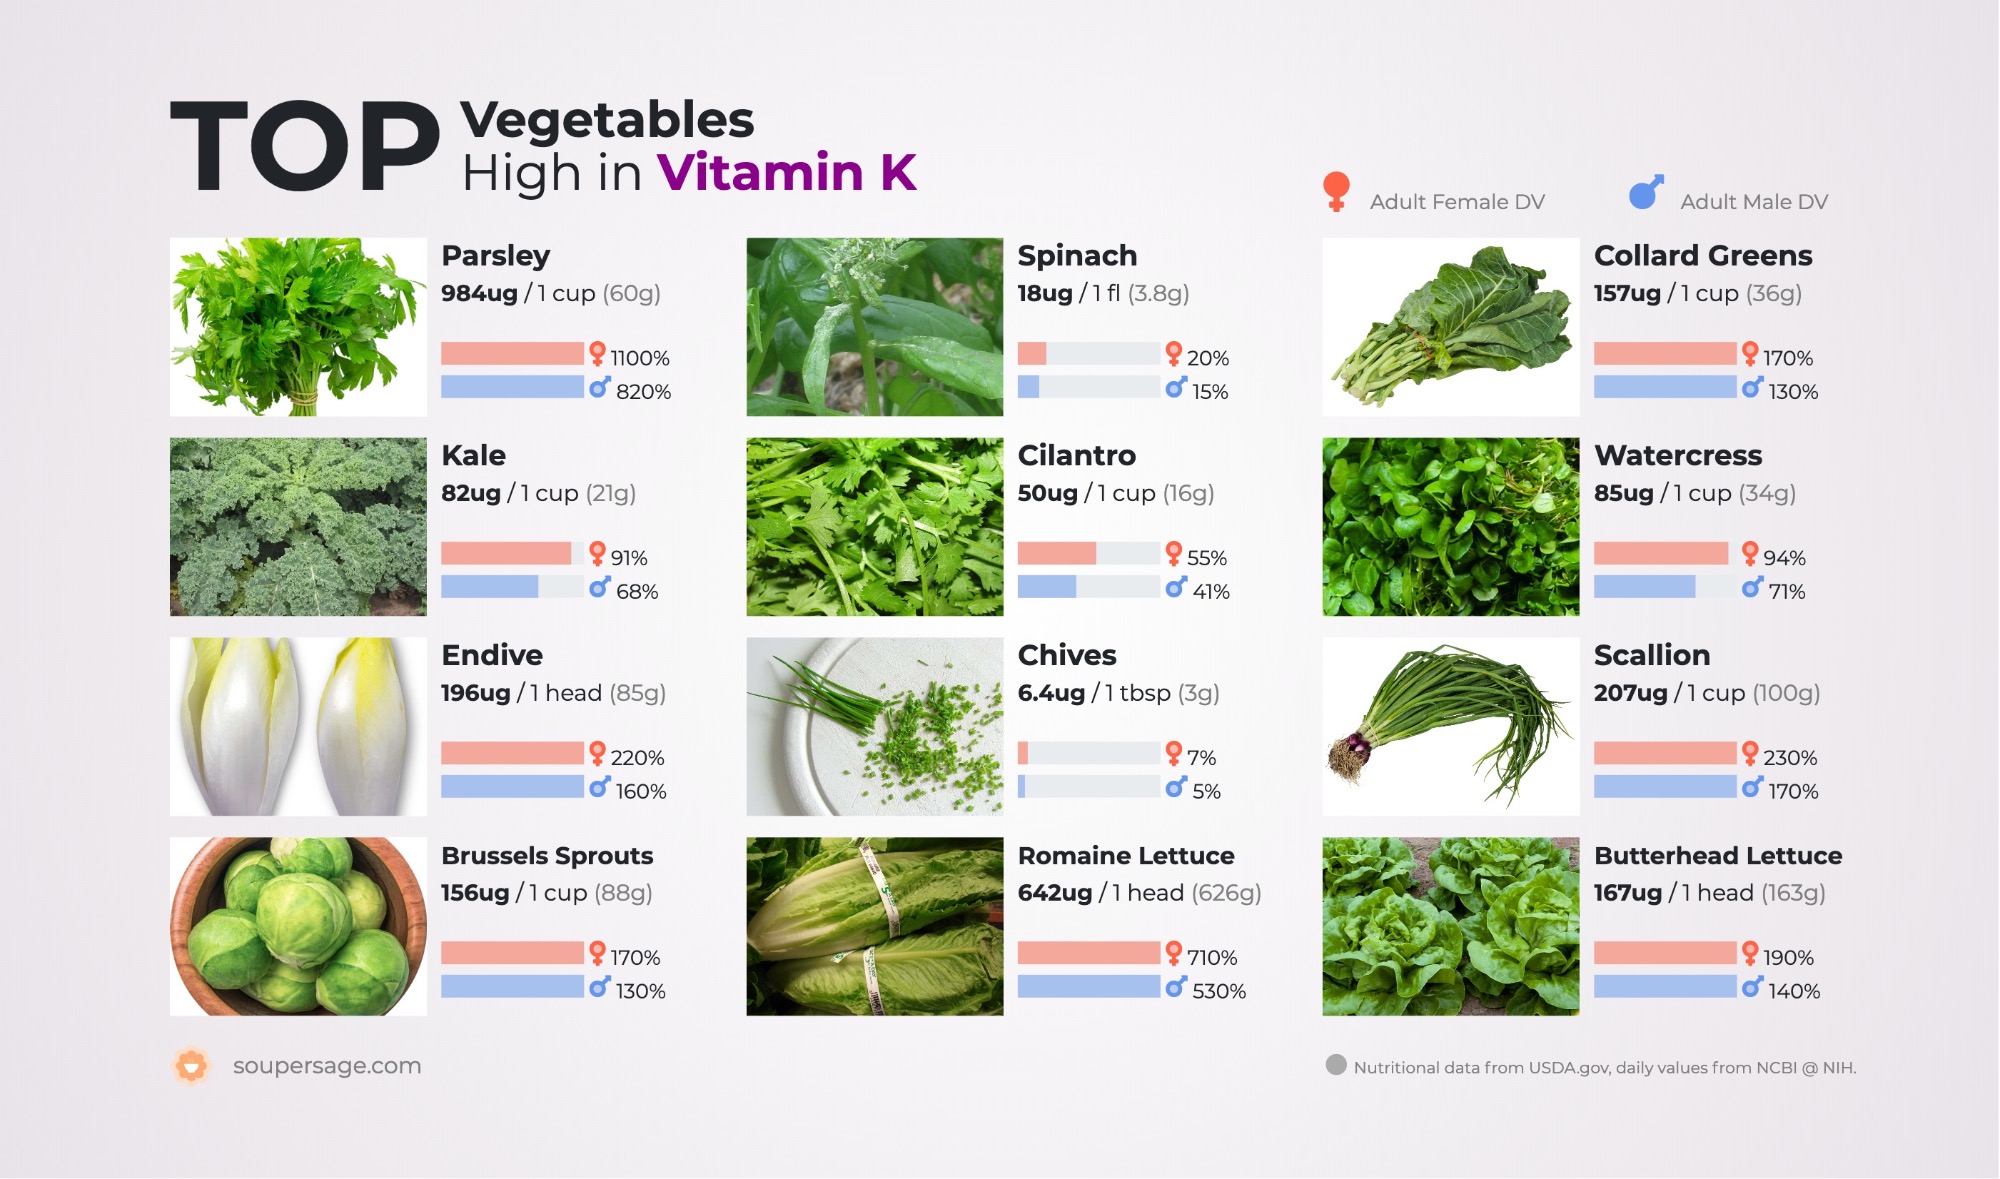 Foods Rich In Vitamin K List